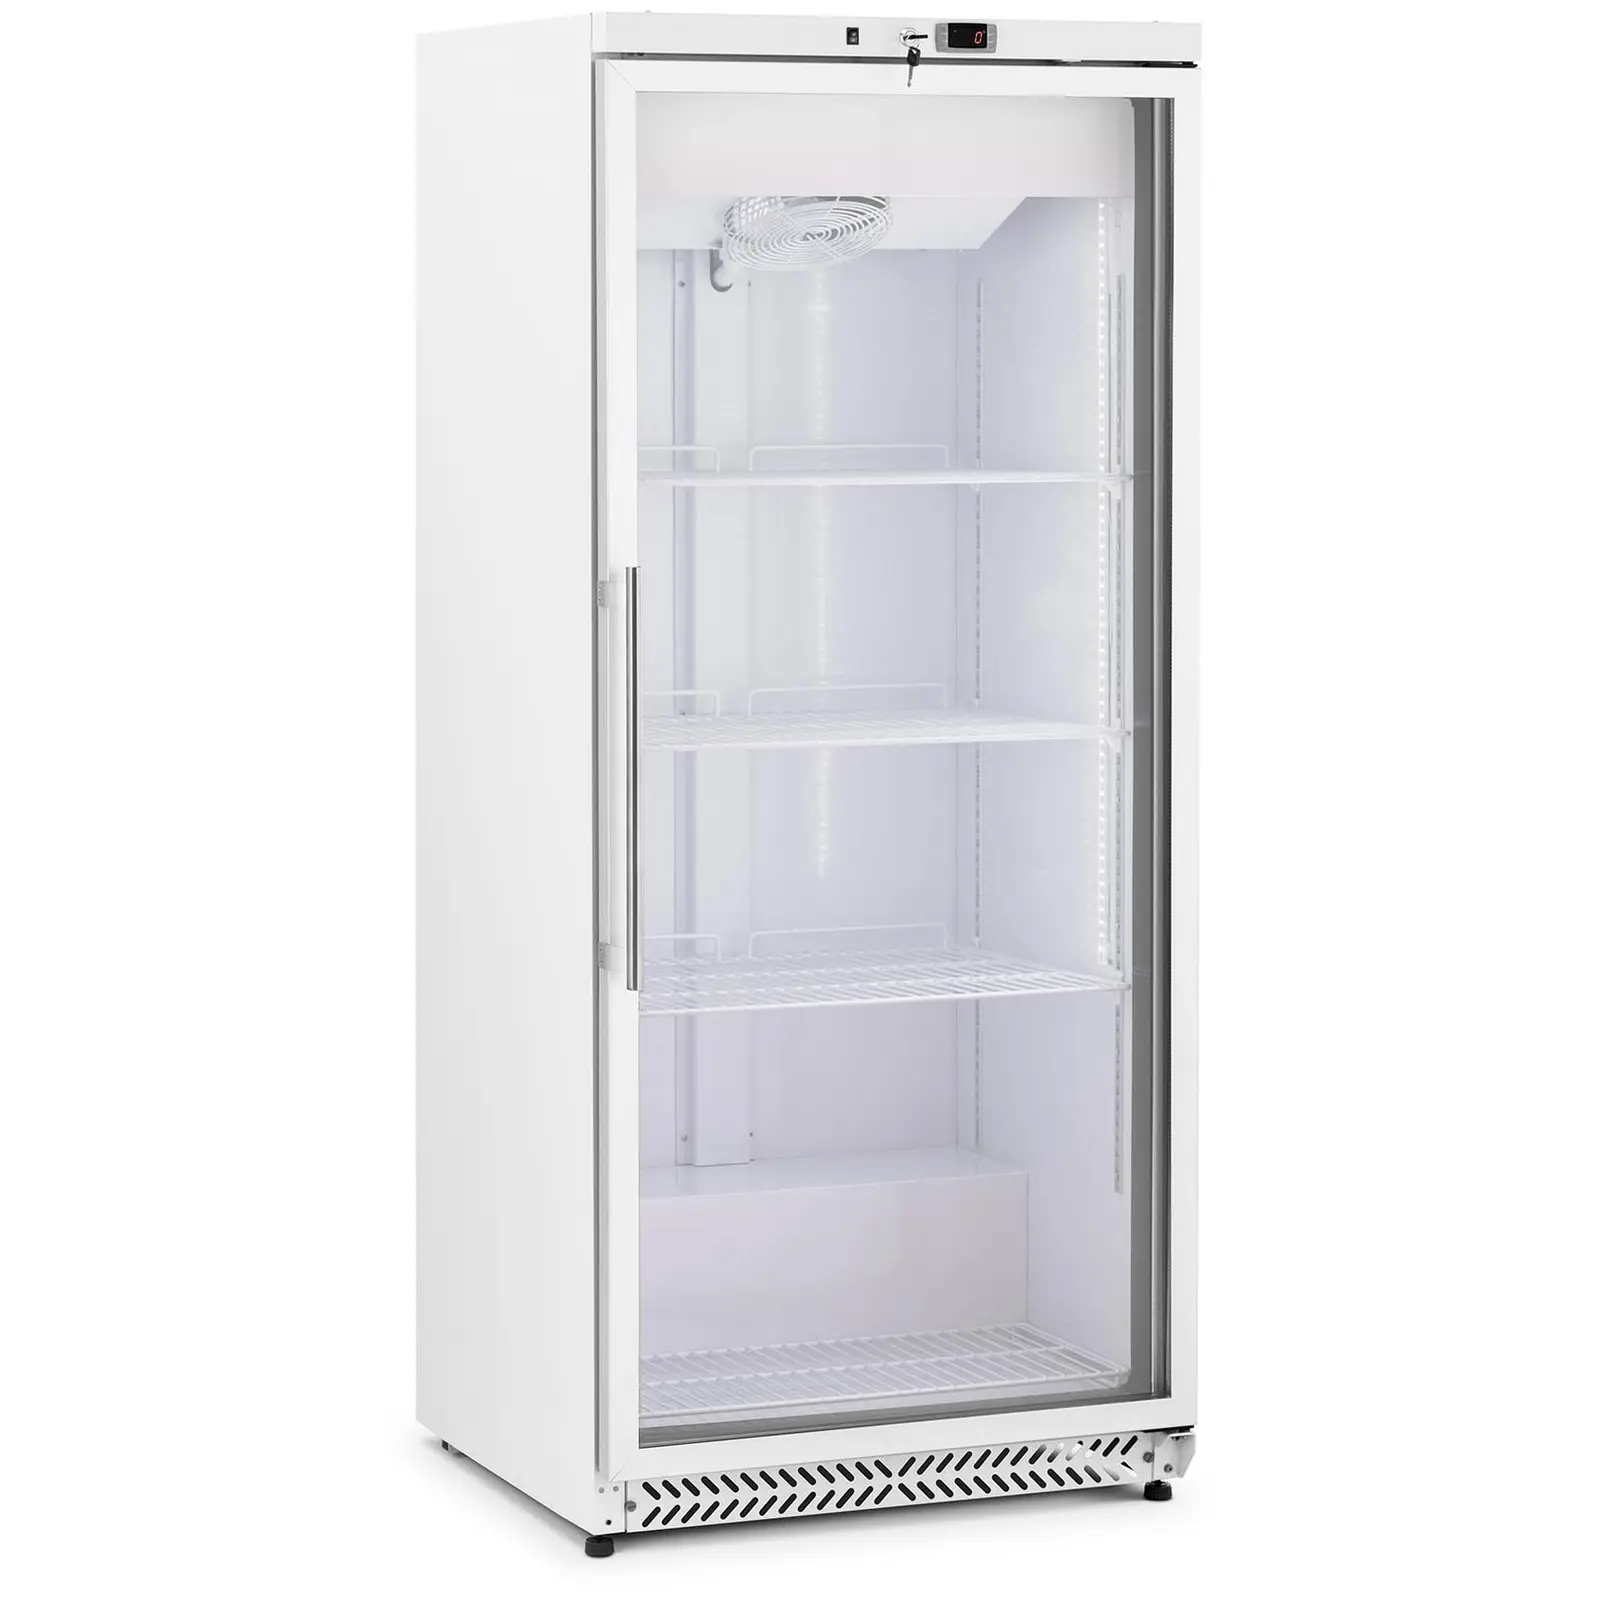 Šaldytuvas - 590 l - „Royal Catering“ - su stiklinėmis durimis